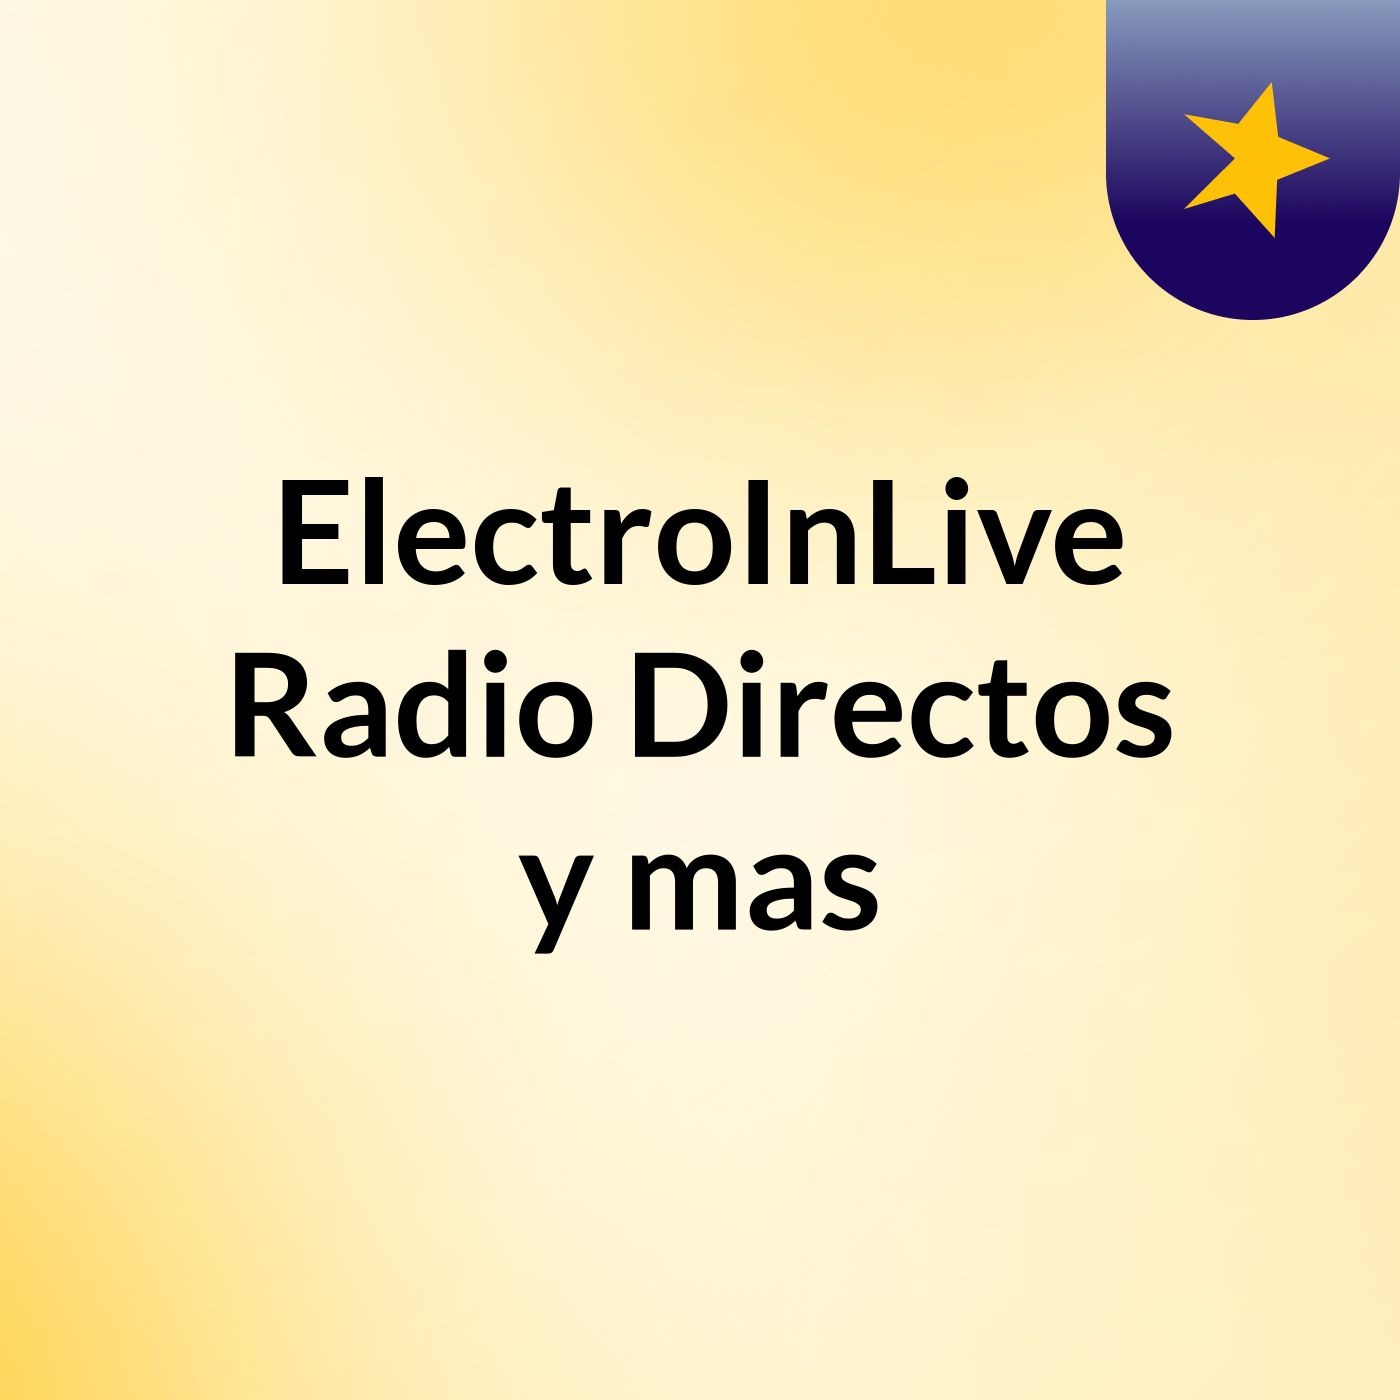 #ElectroInLive Radio, Directos y mas